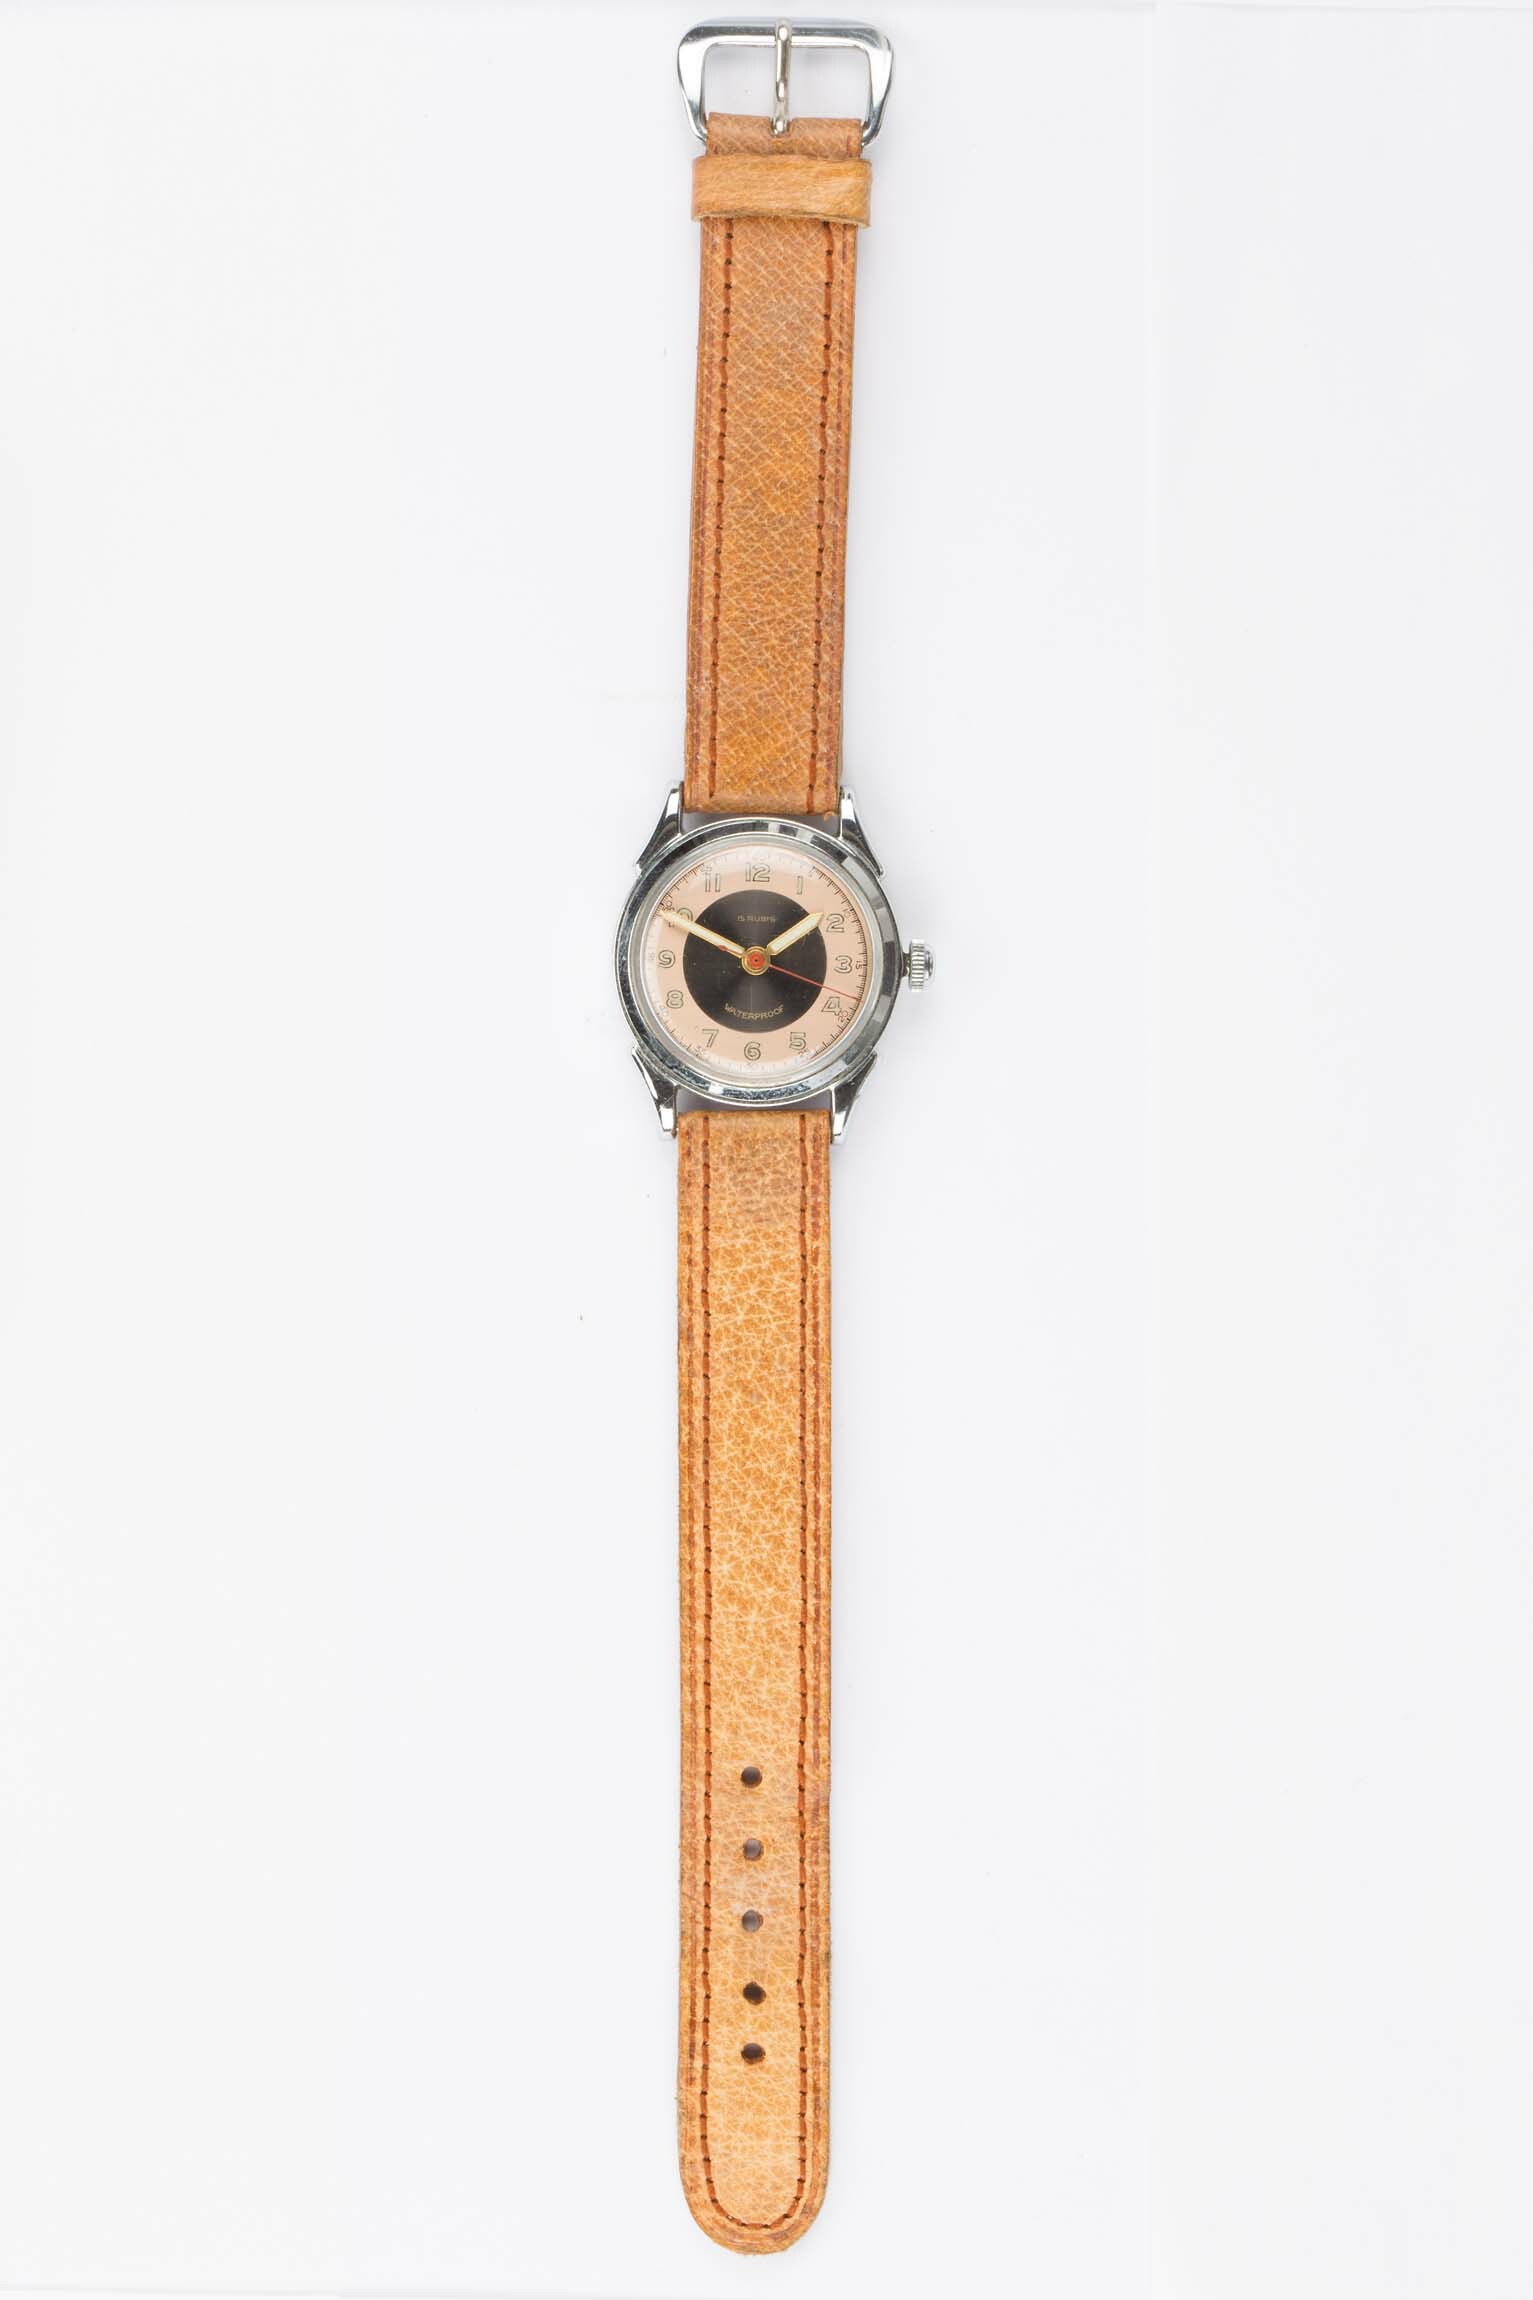 Armbanduhr "Waterproof", Schweiz, Pforzheim, um 1940 (Deutsches Uhrenmuseum CC BY-SA)